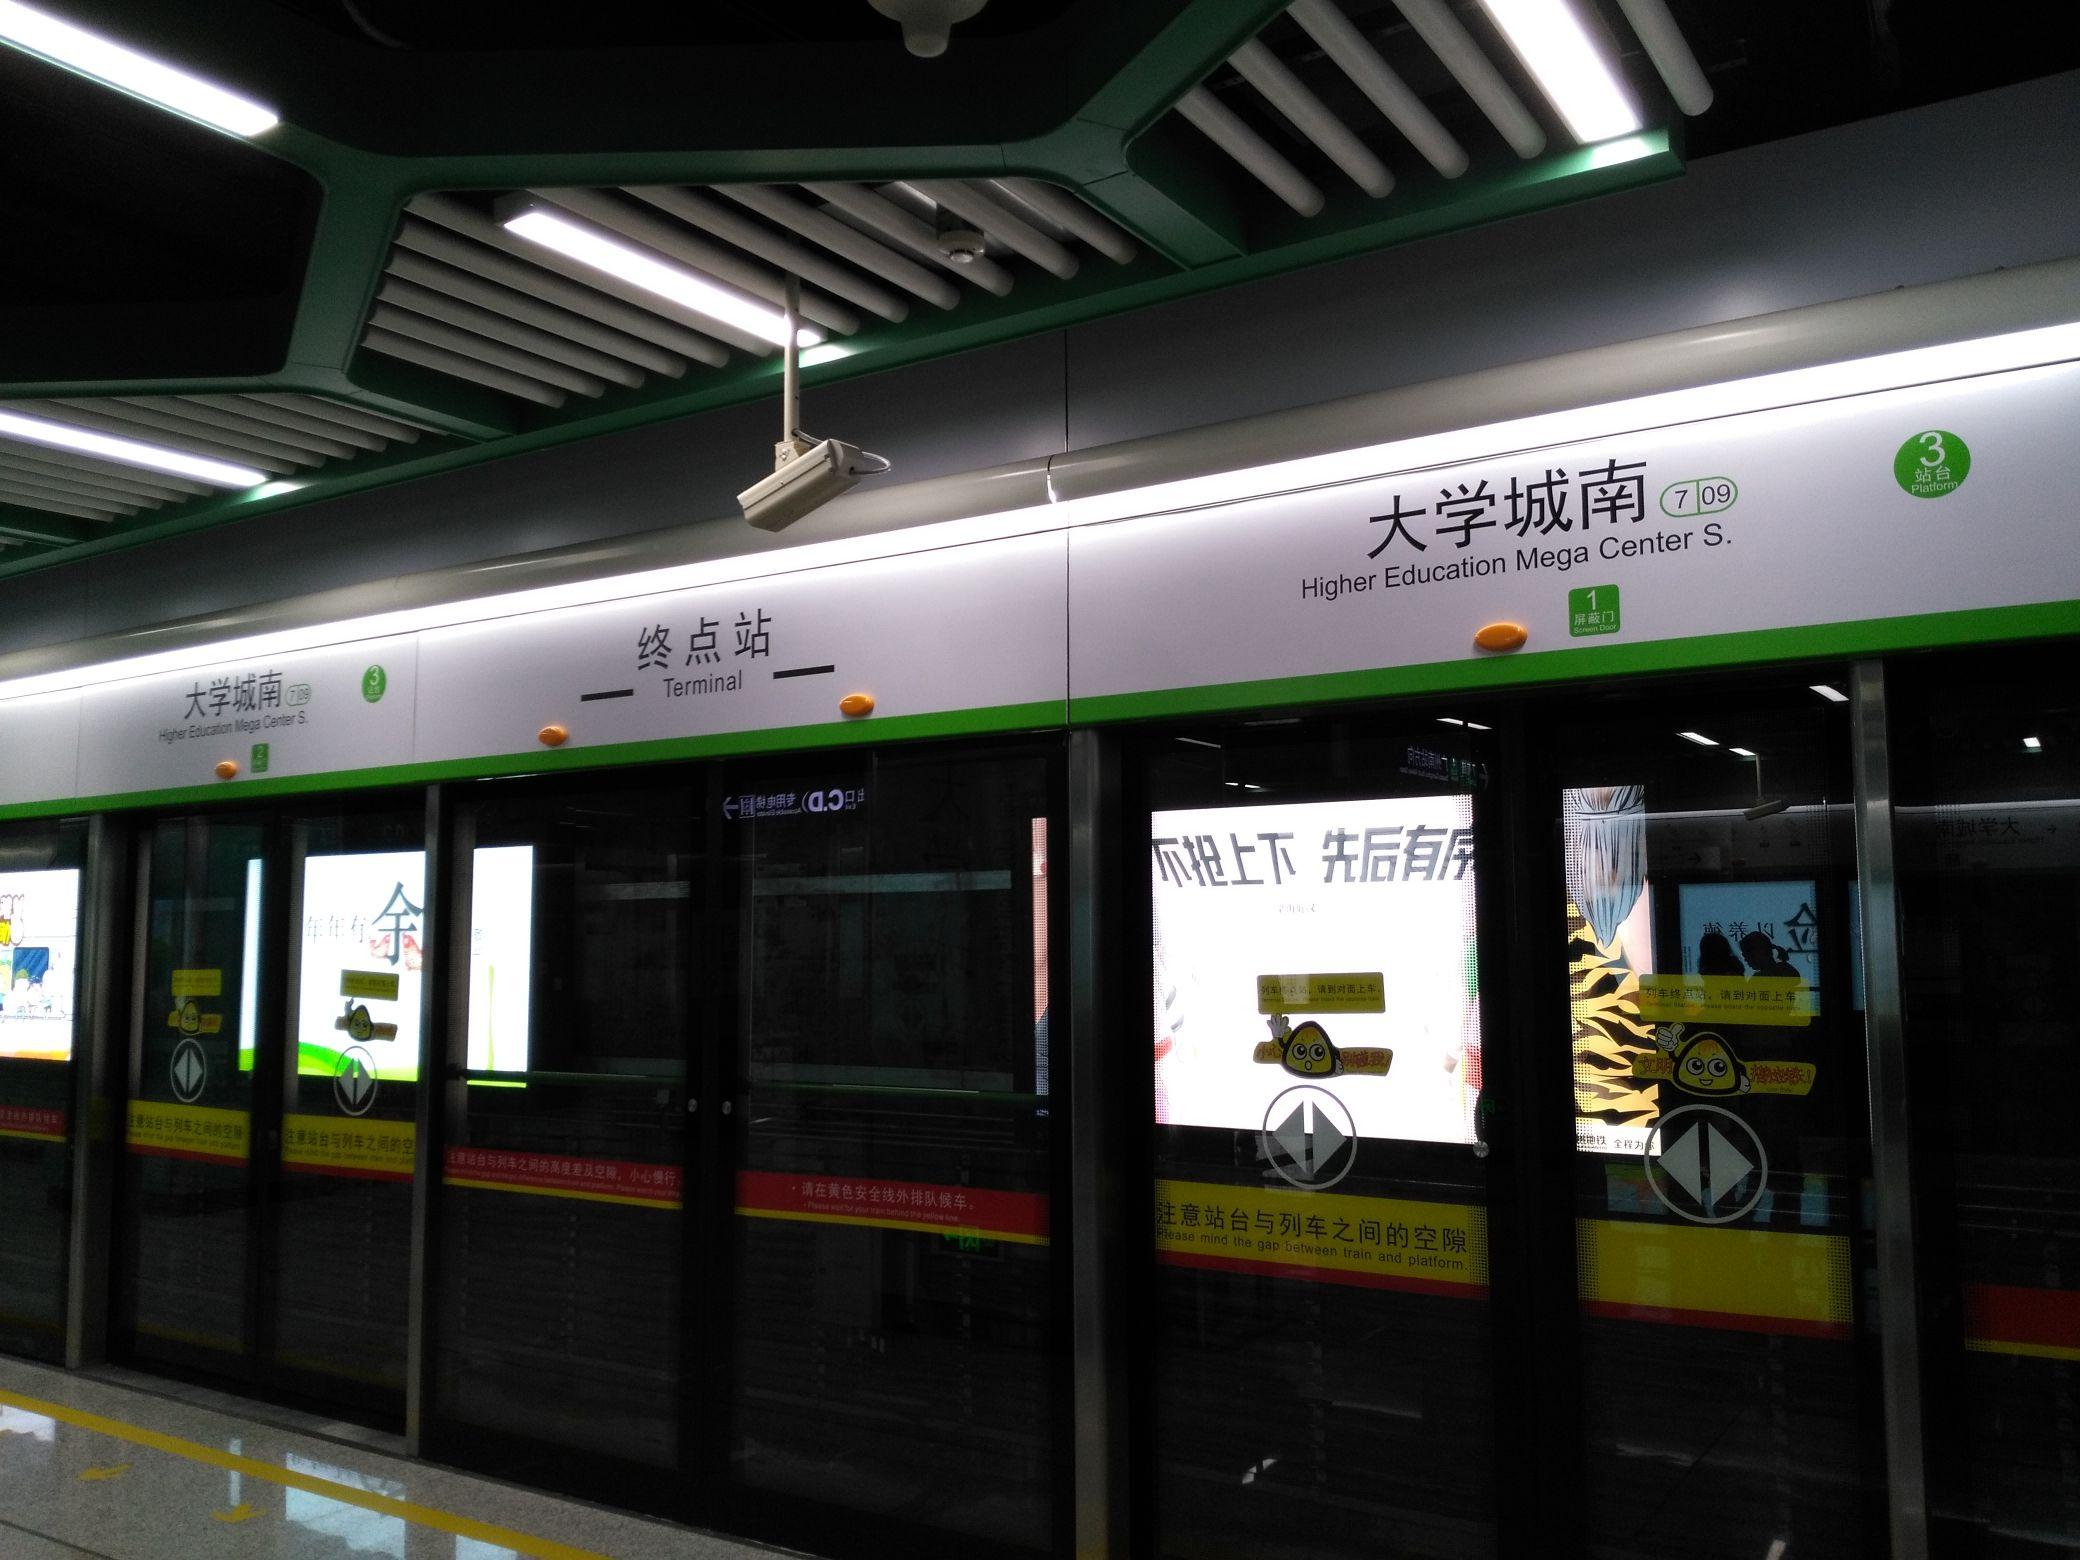 【广州地铁2号线】A5变声老鼠08x107-108 三元里站进站_哔哩哔哩_bilibili